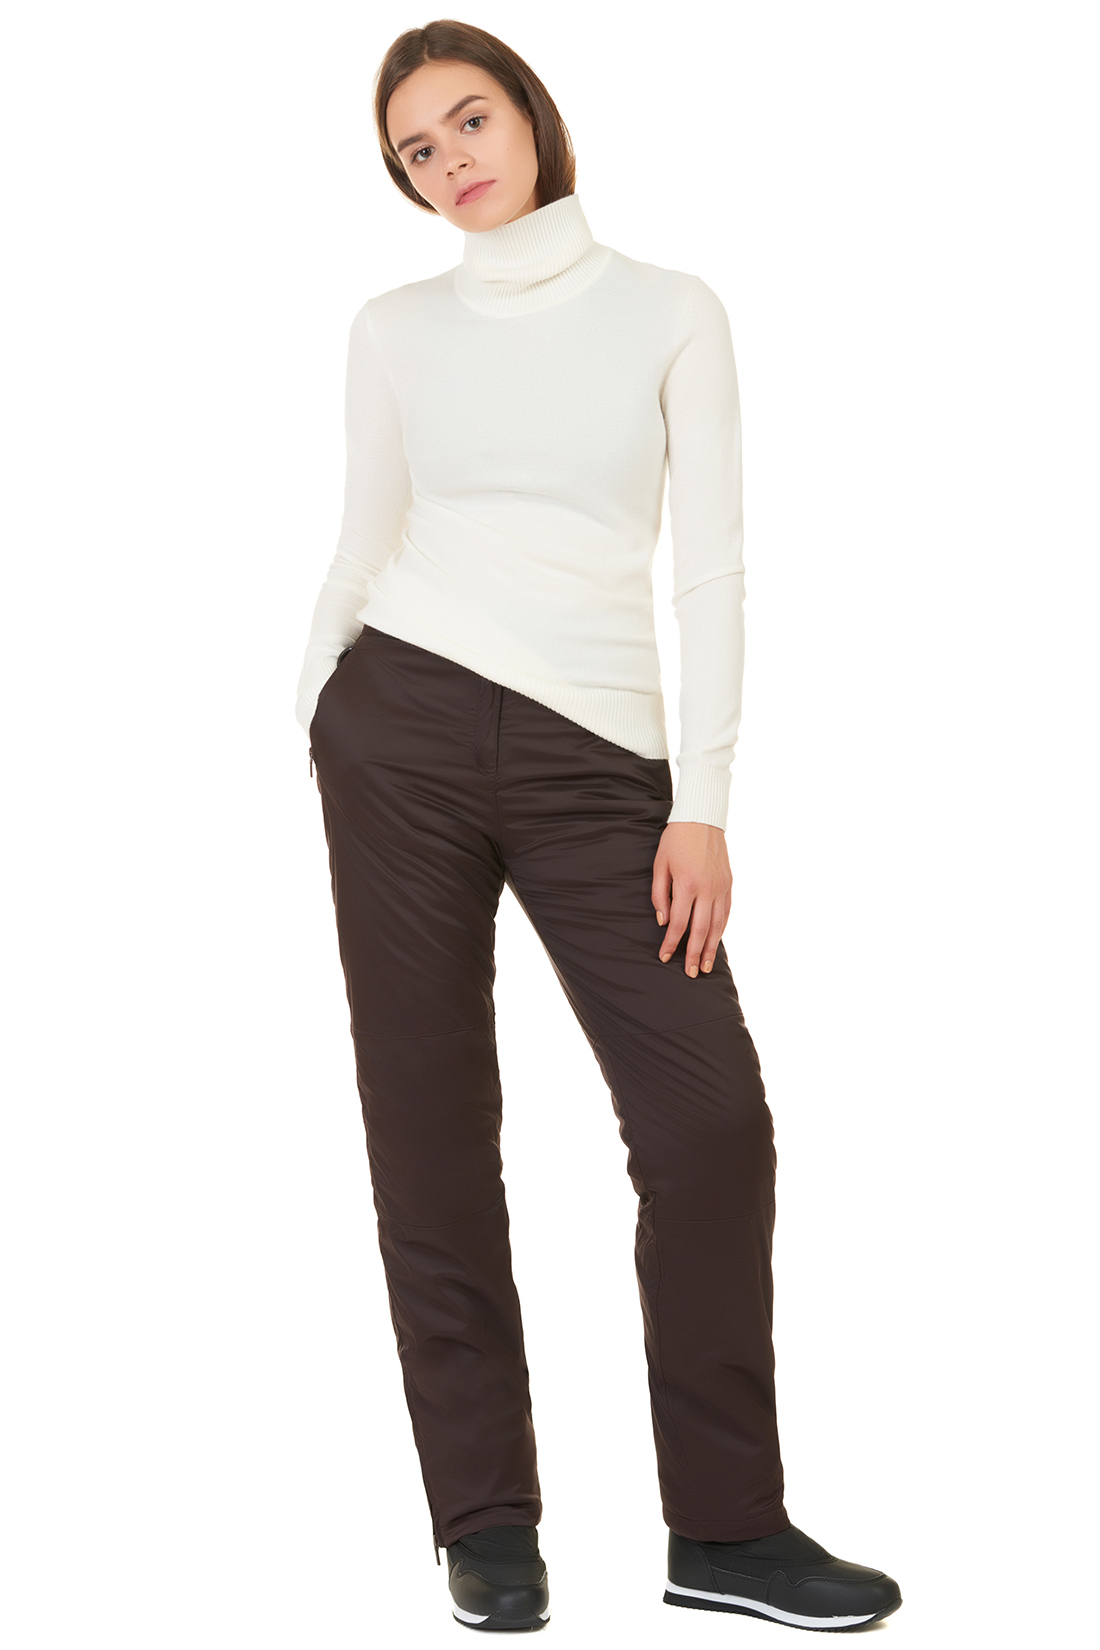 Утеплённые брюки с молниями (арт. baon B297505), размер XL, цвет коричневый Утеплённые брюки с молниями (арт. baon B297505) - фото 5